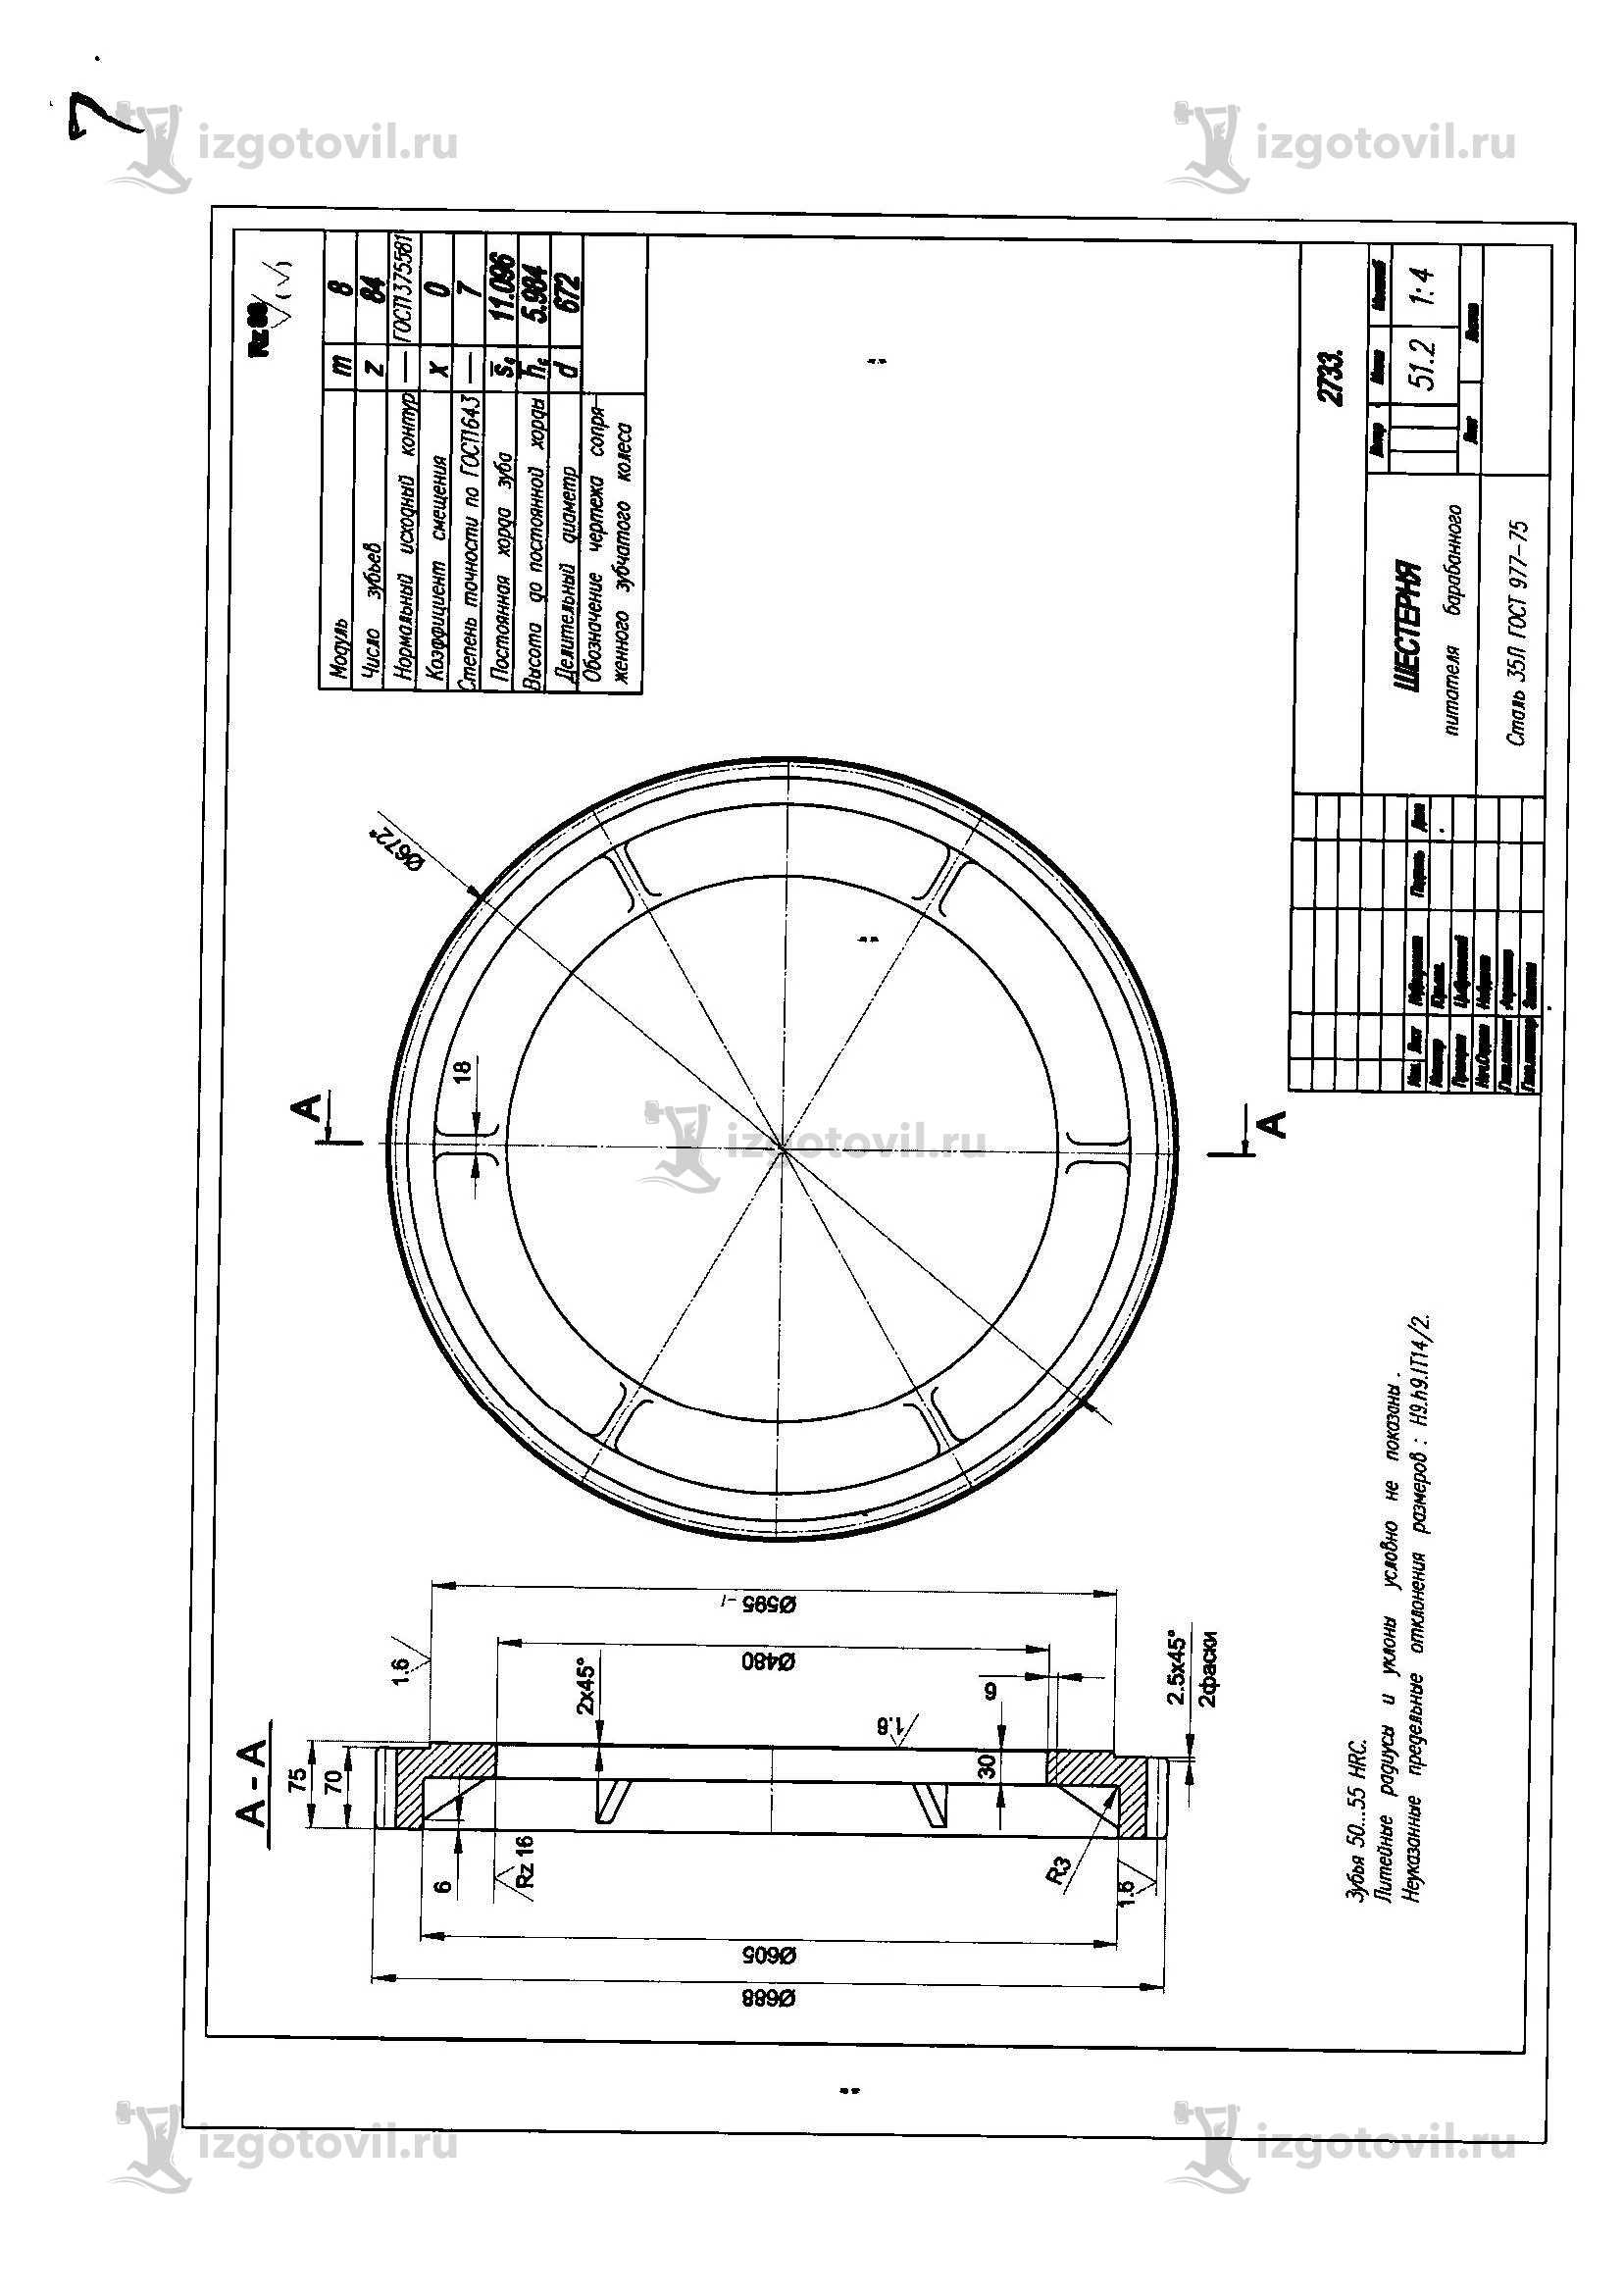 Изготовление деталей по чертежам (шестерни,колеса, ось)